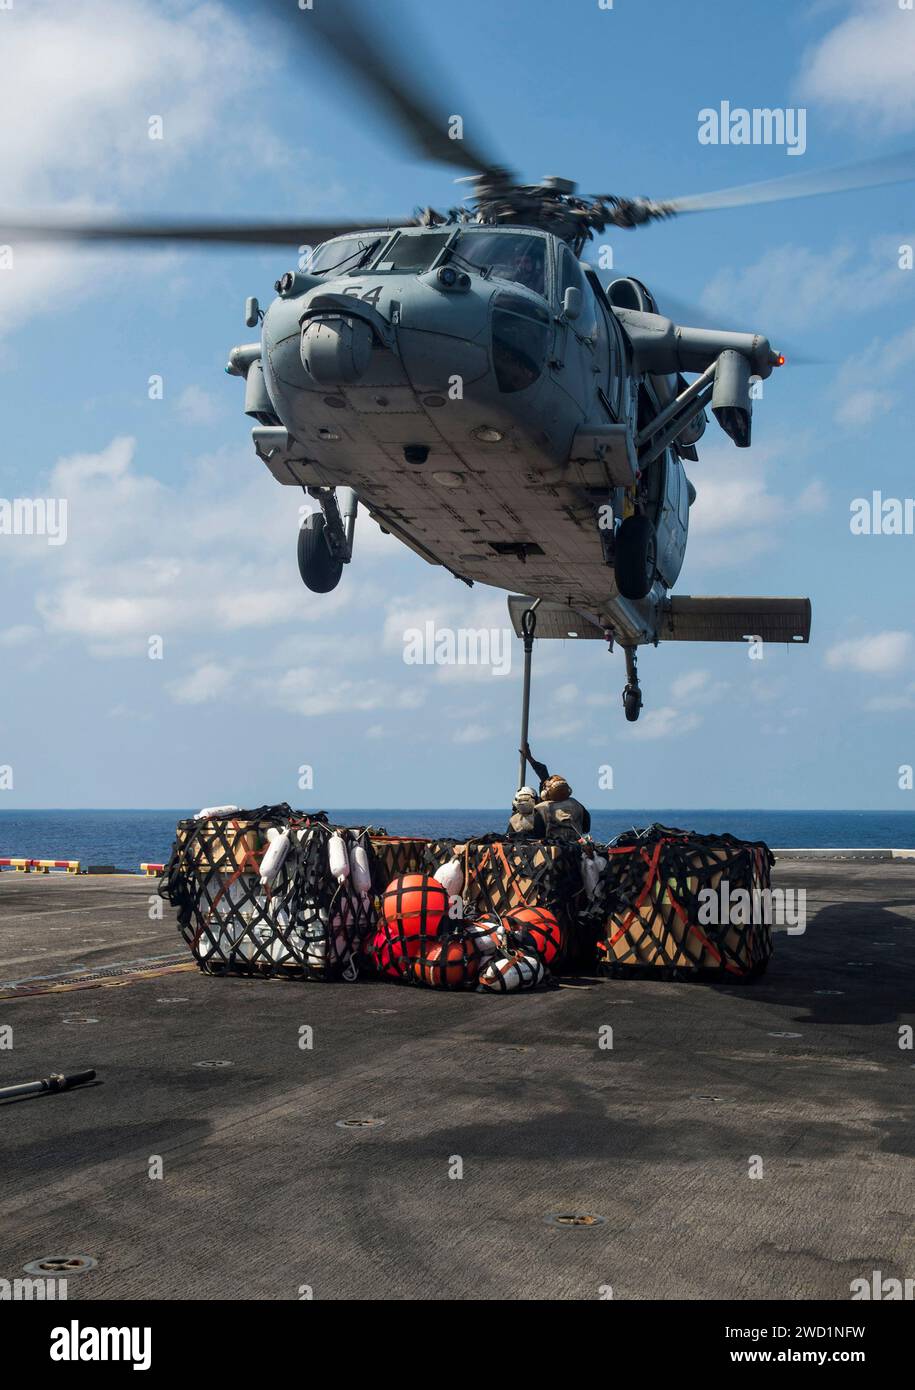 Die Marines befestigen Paletten mit Vorräten an einem MH-60S Seahawk Helikopter während einer vertikalen Auffüllung. Stockfoto